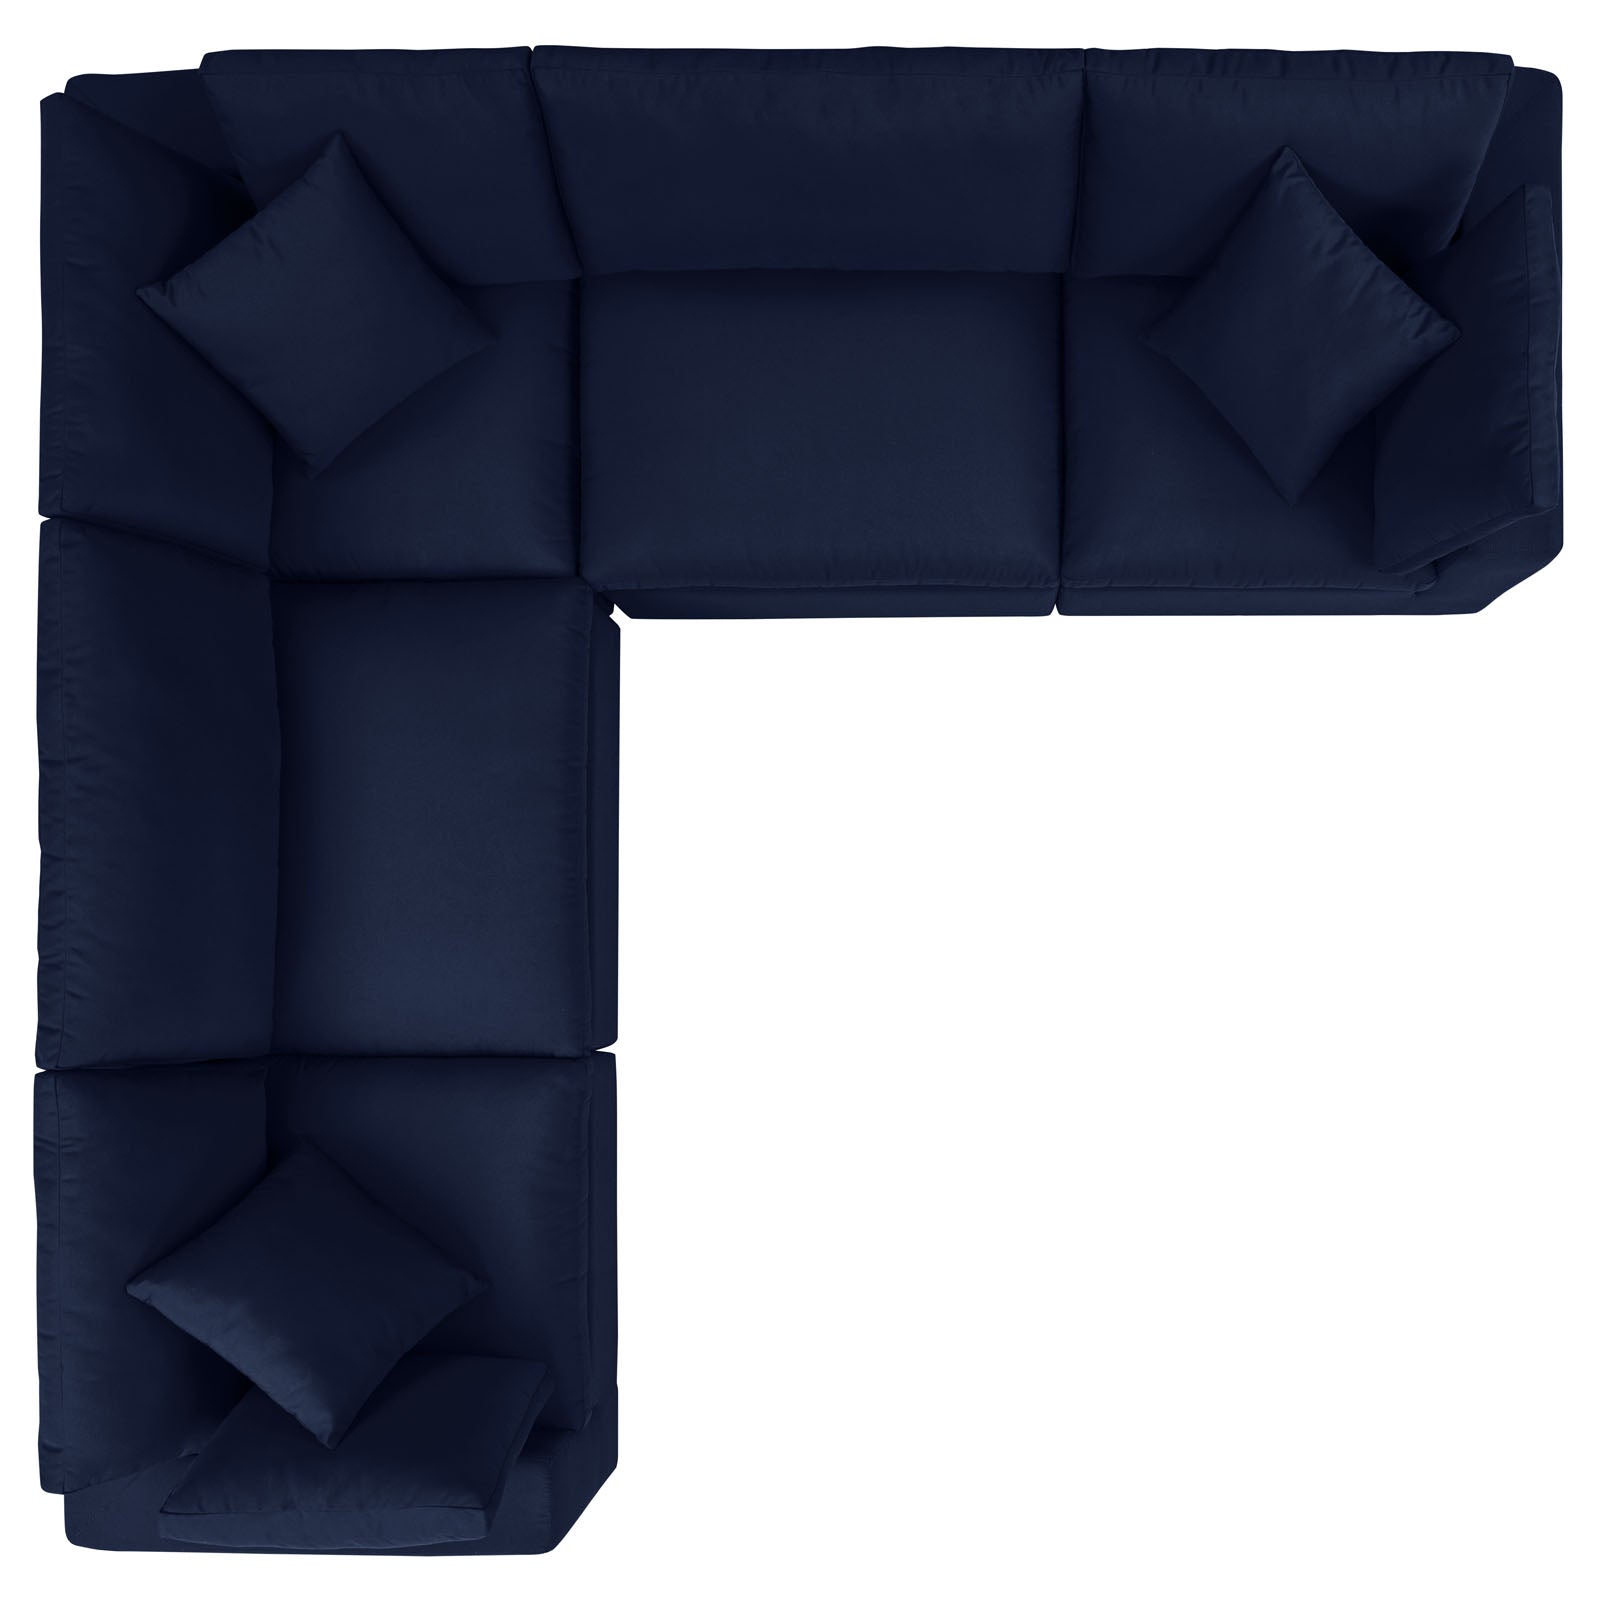 Modway Outdoor Sofas - Commix 5-Piece Sunbrella Outdoor Patio Sectional Sofa Navy